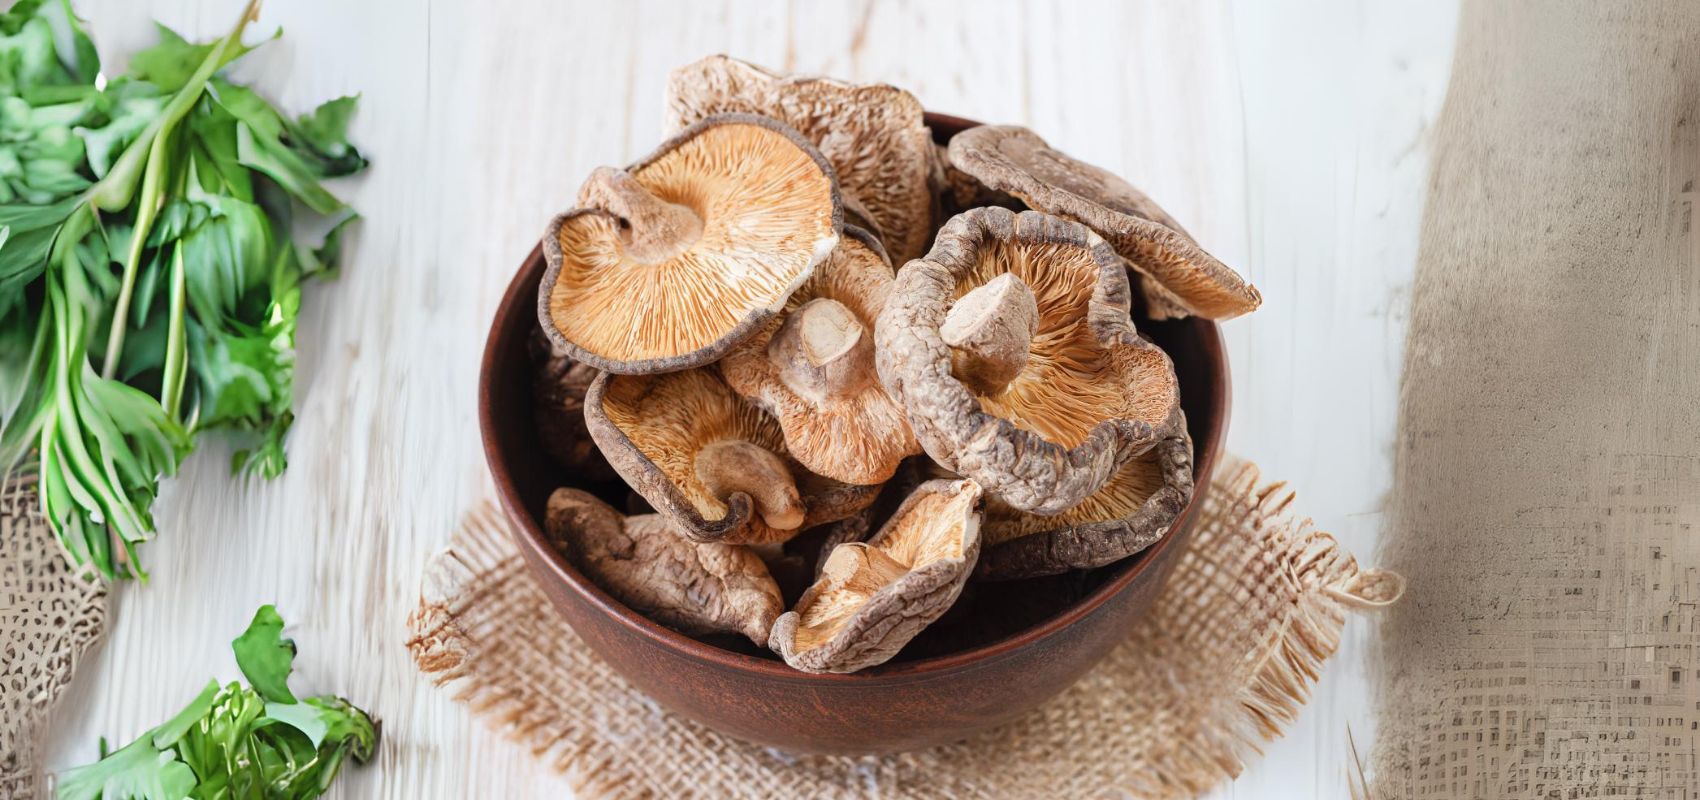 Domowa uprawa grzybów shiitake – praktyczne wskazówki!